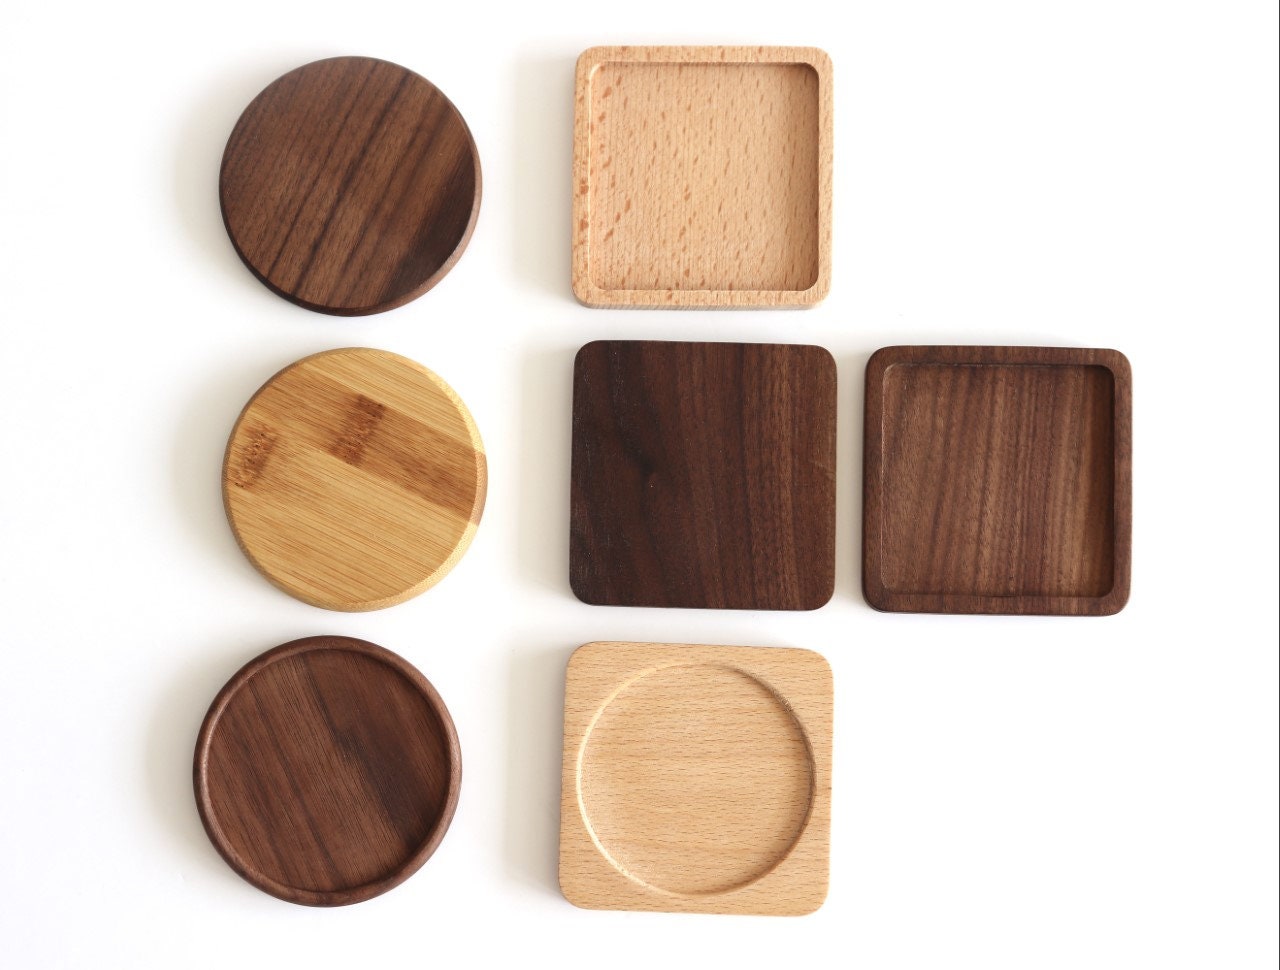 Personalised Square Wood Coasters, Custom Coasters, Wooden Coaster Set,  Handmade Wooden Coasters, Wood Square Coasters, Natural Wood Coaster 